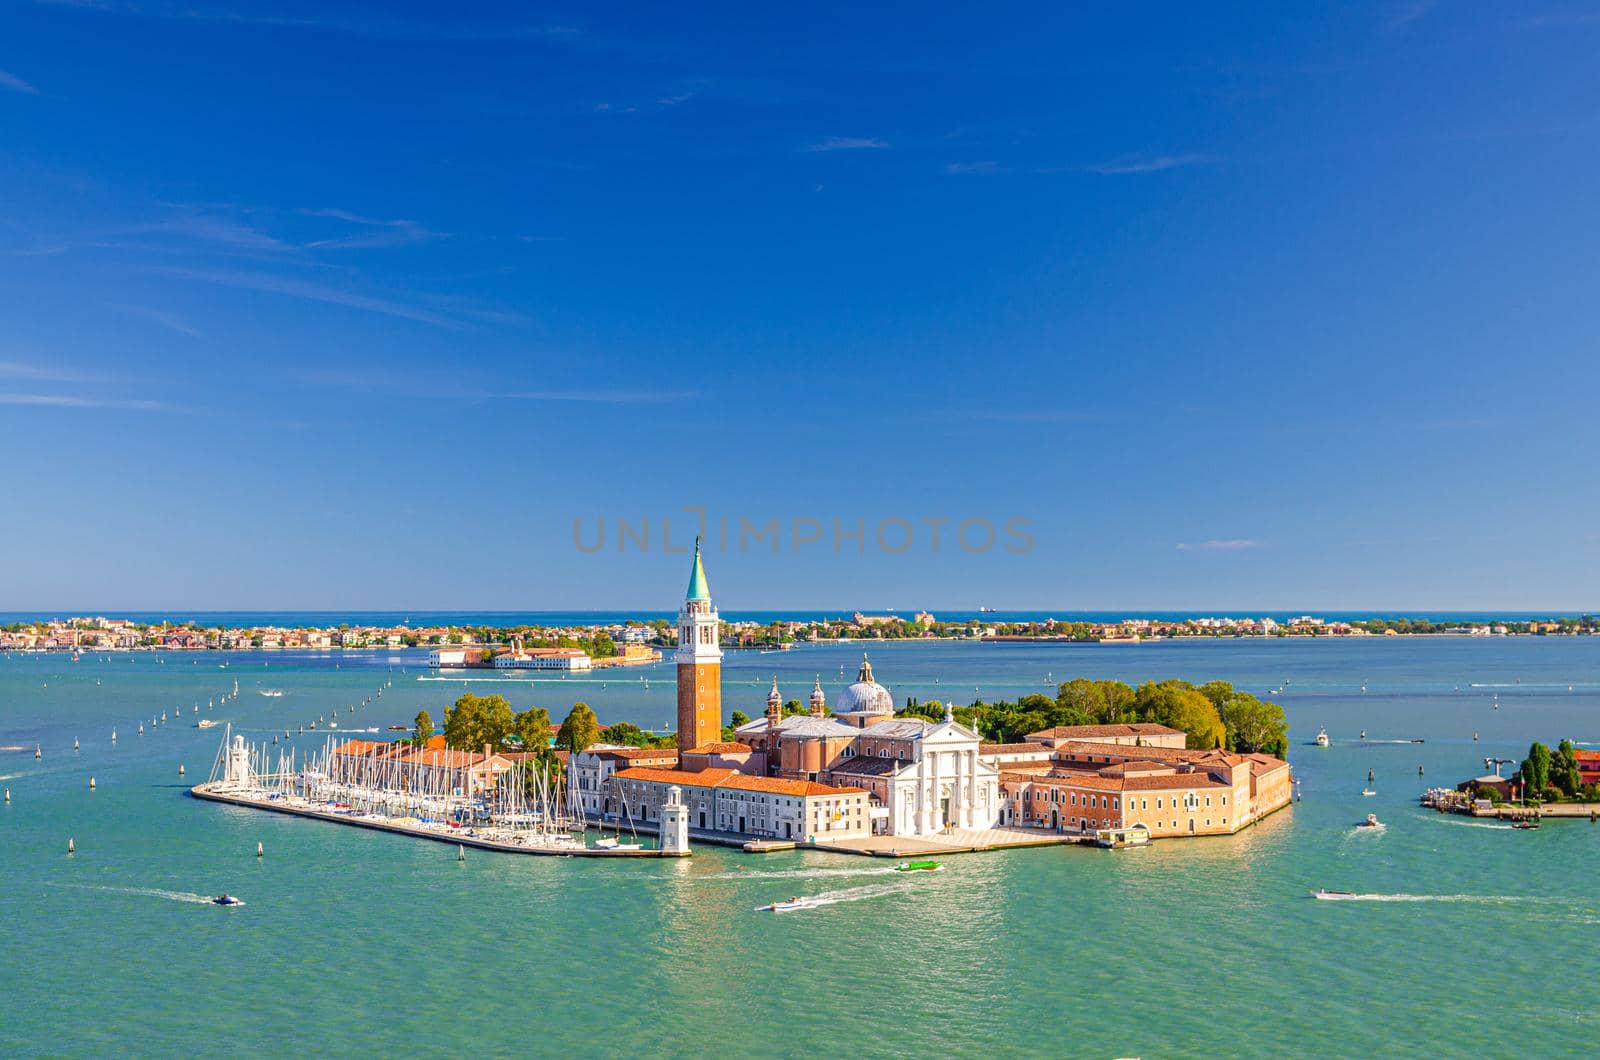 Aerial panoramic view of San Giorgio Maggiore island with Campanile San Giorgio in Venetian Lagoon, sailing boats in Giudecca Canal, Lido island, blue sky background, Venice city, Veneto Region, Italy